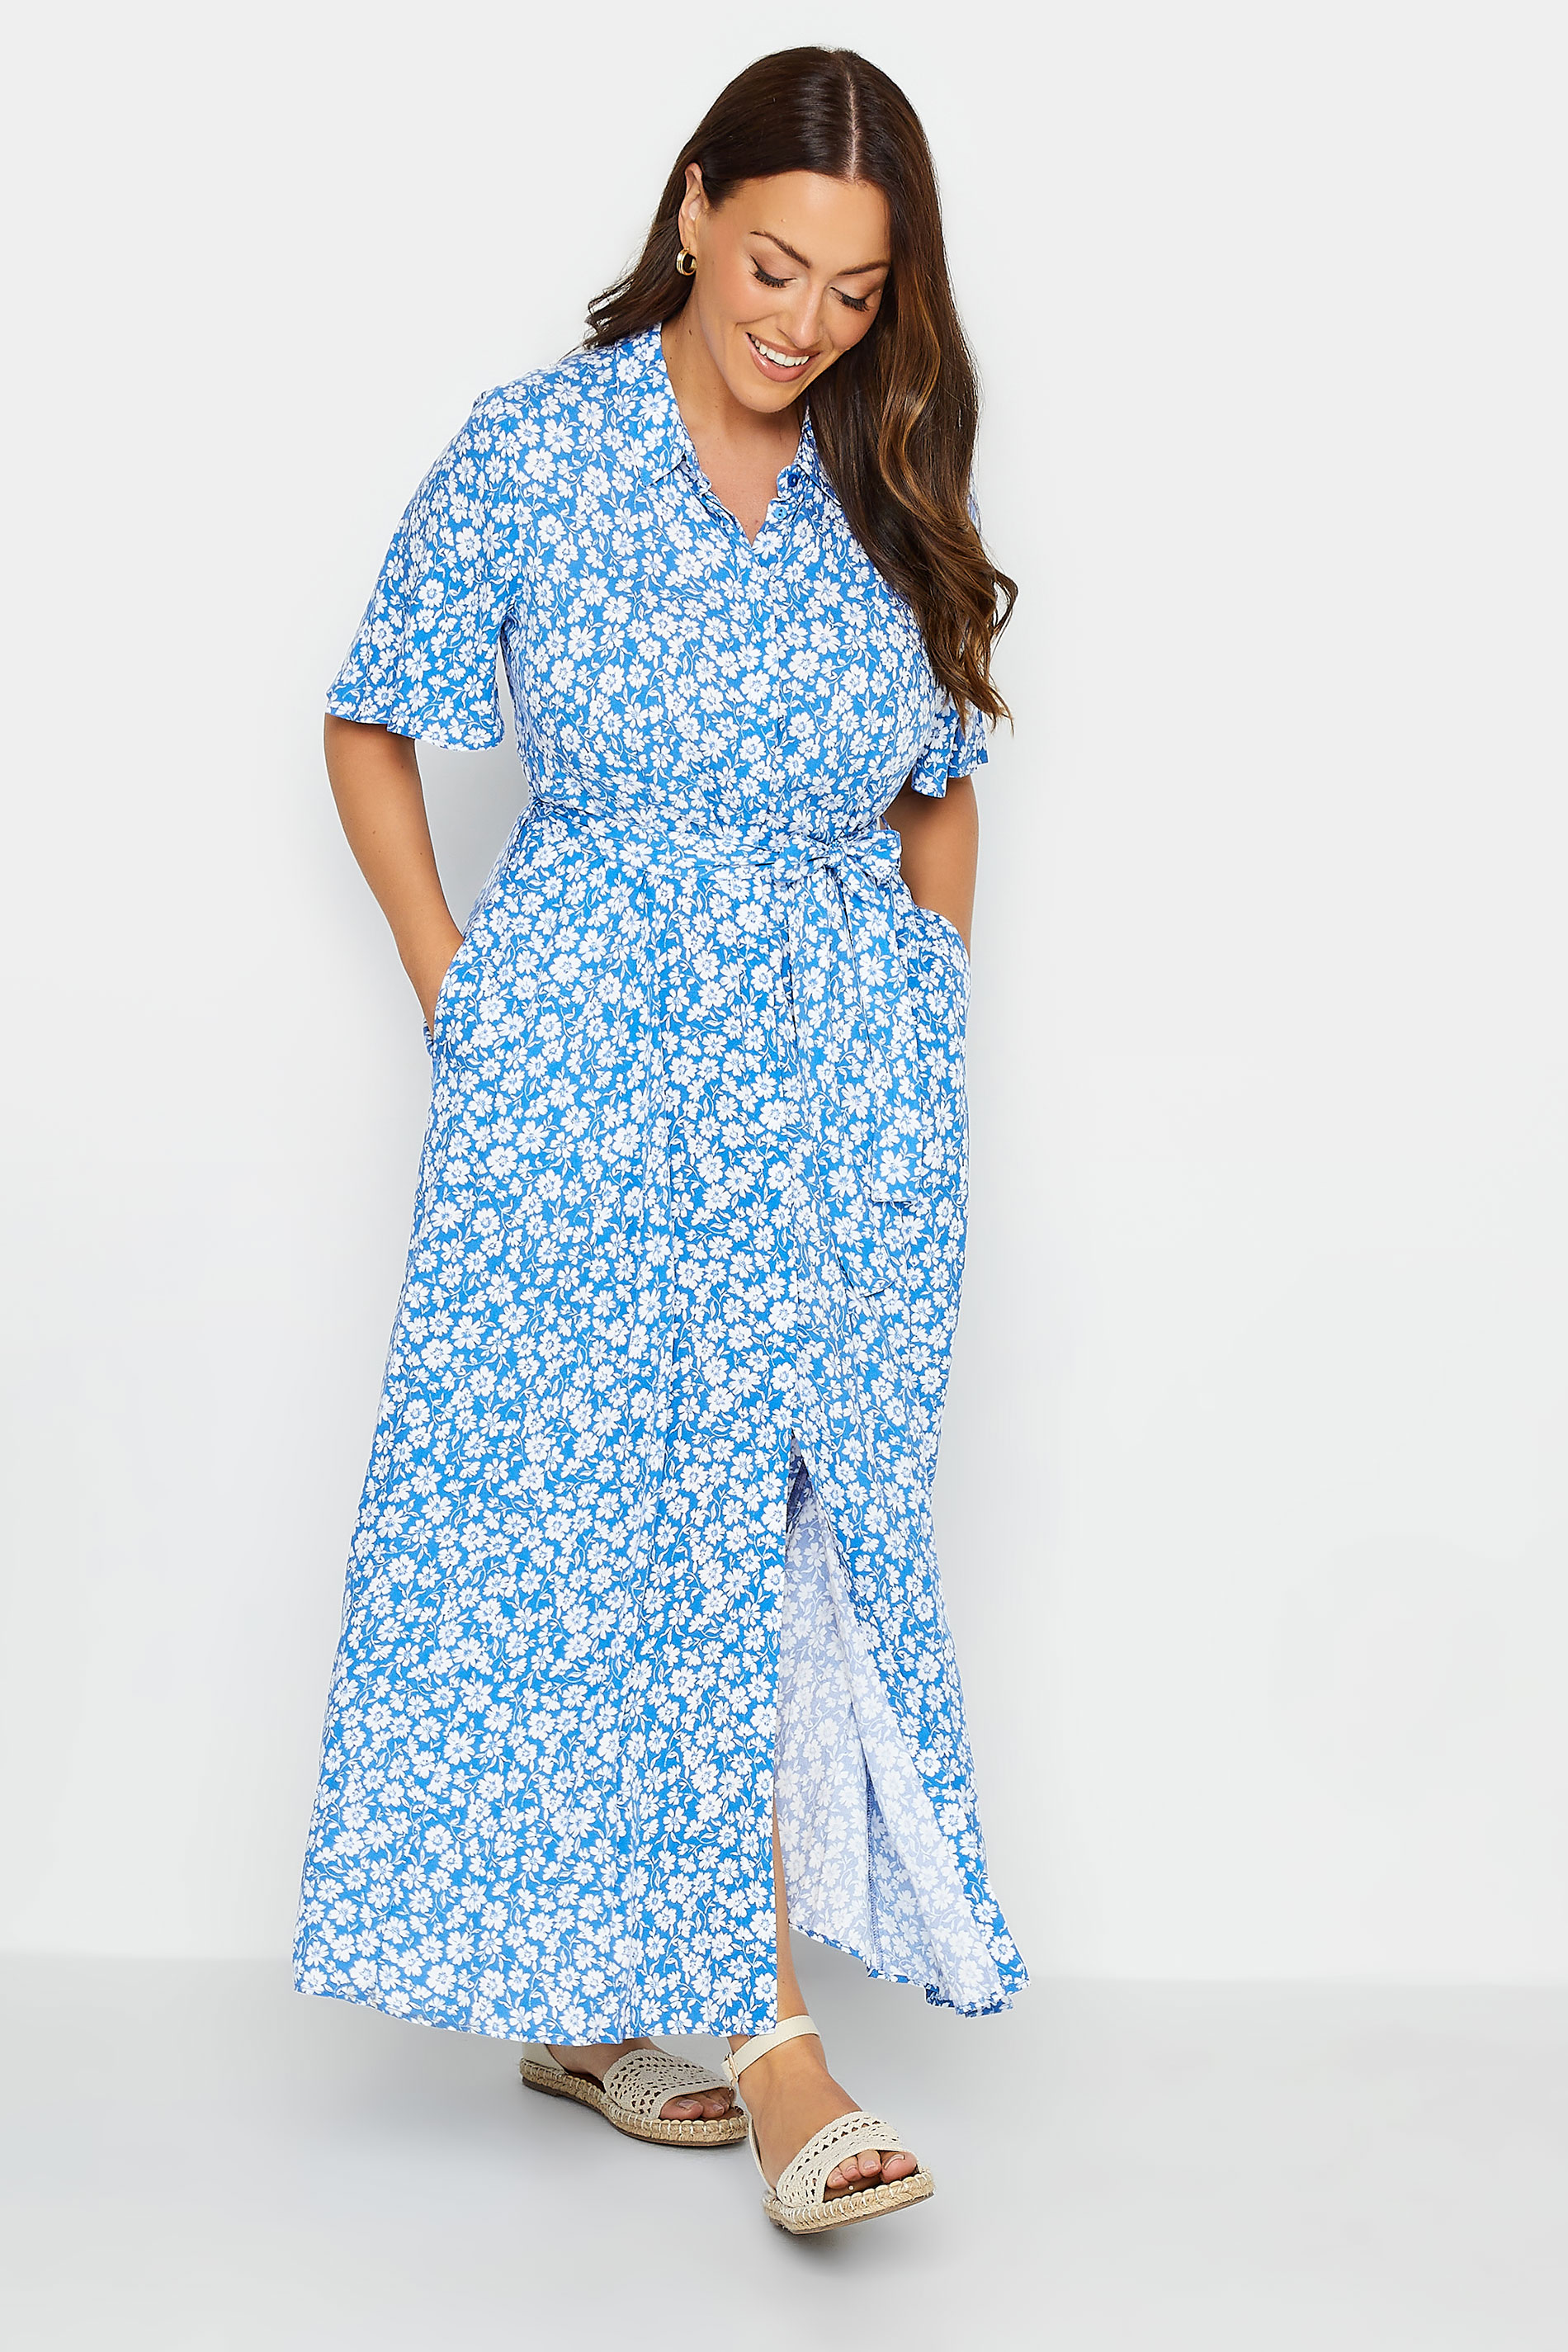 M&Co Blue Floral Print Maxi Shirt Dress | M&Co 2